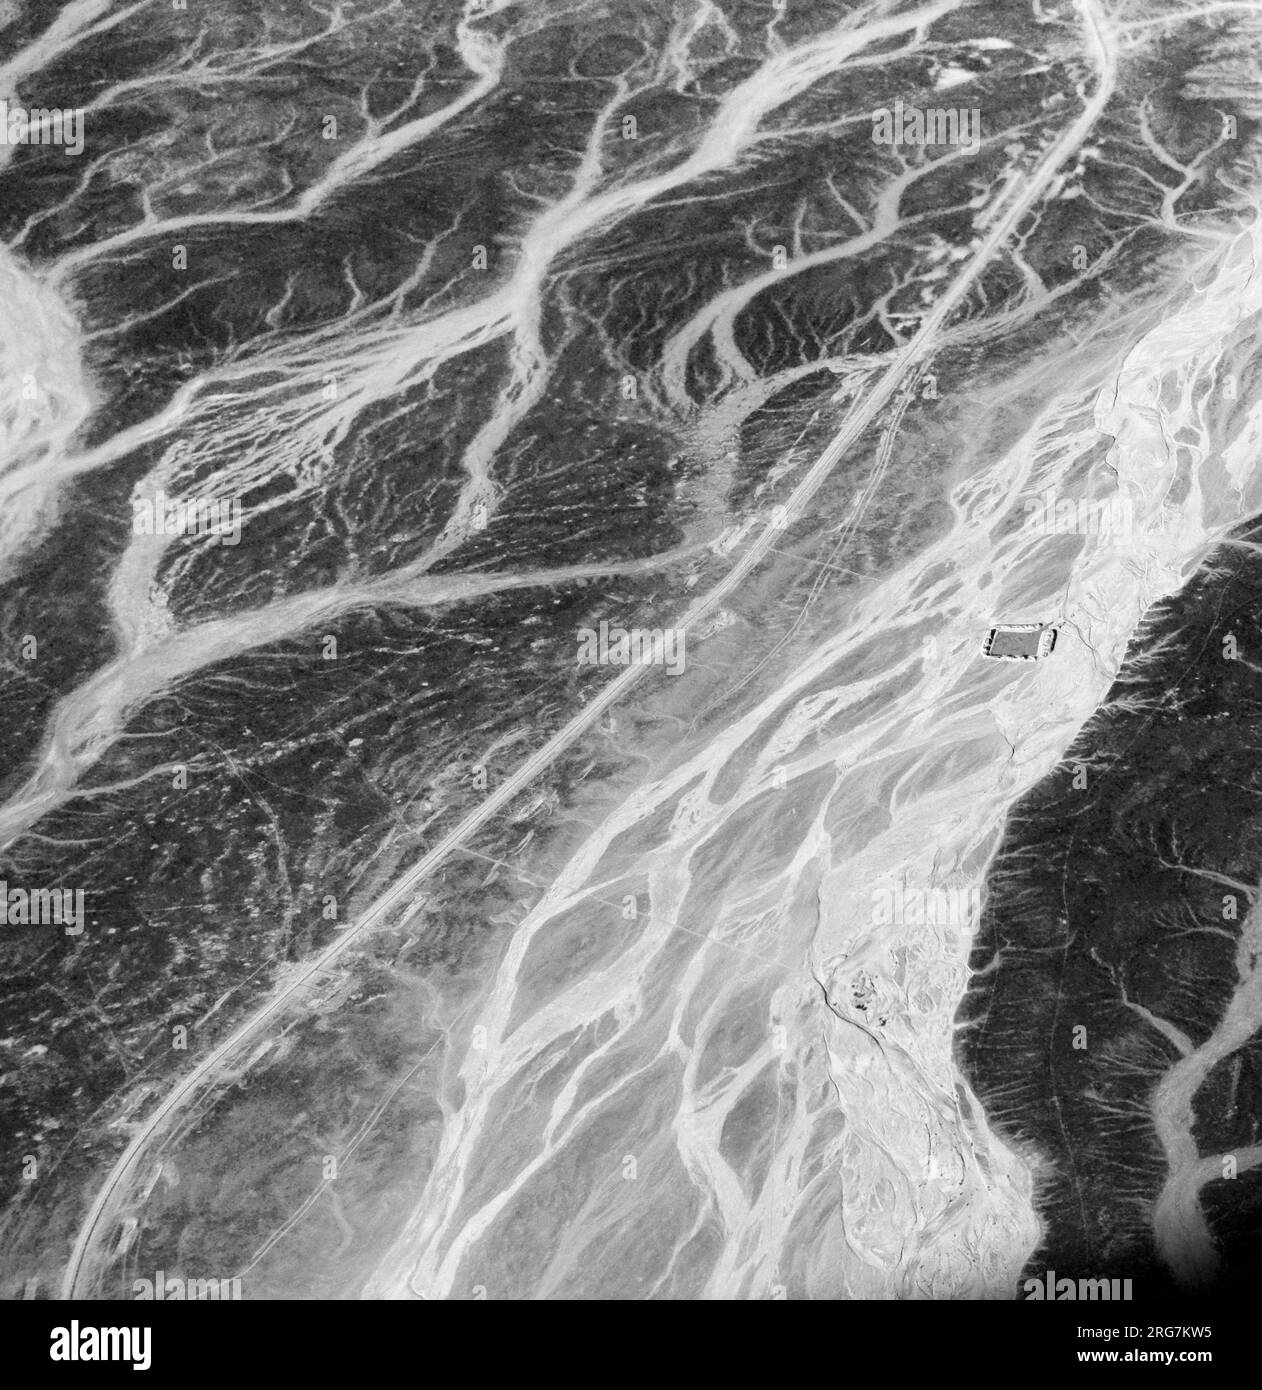 Une vue aérienne surréaliste des lits de rivières asséchées dans le désert en Jordanie près de la frontière avec l'Arabie saoudite. Banque D'Images